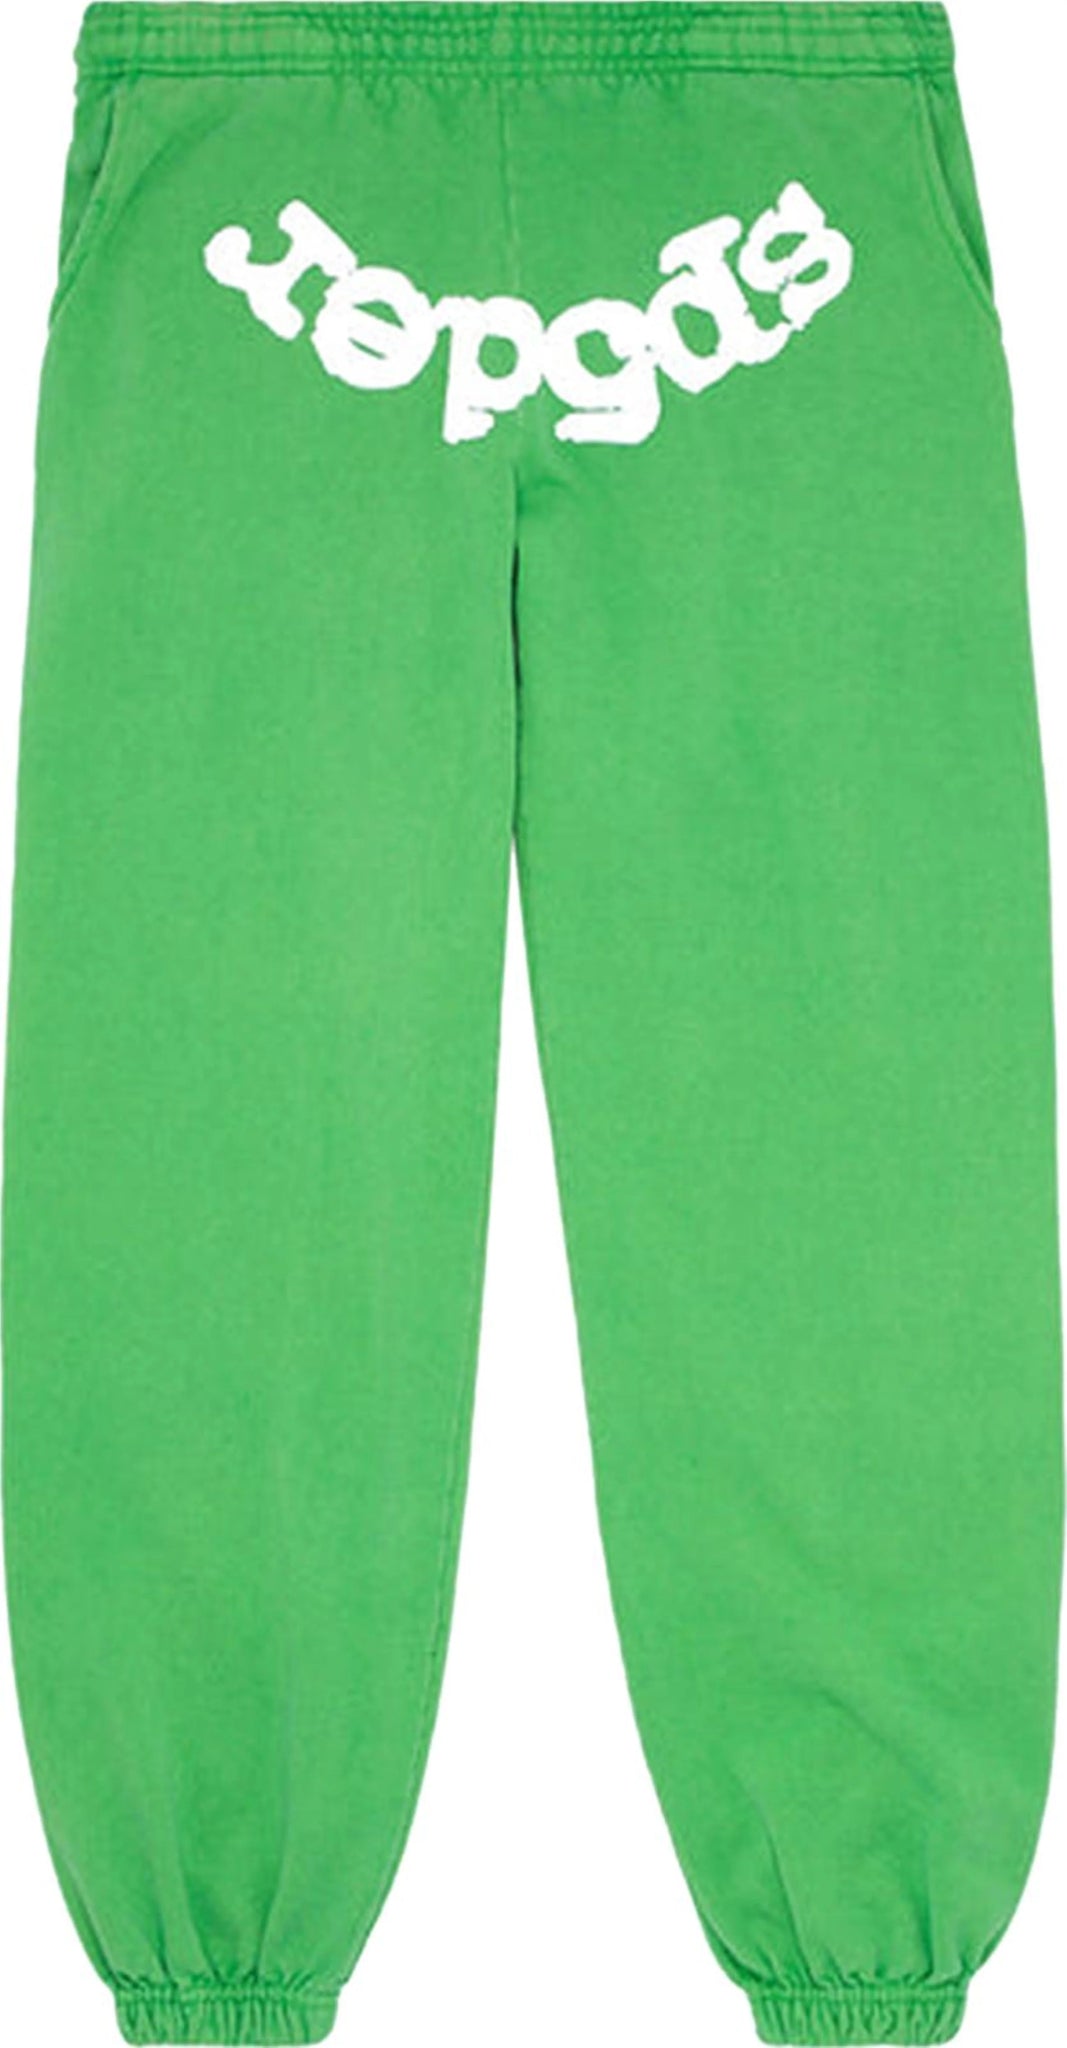 Sp5der Websuit Sweatpant Slime Green - Paroissesaintefoy Sneakers Sale Online